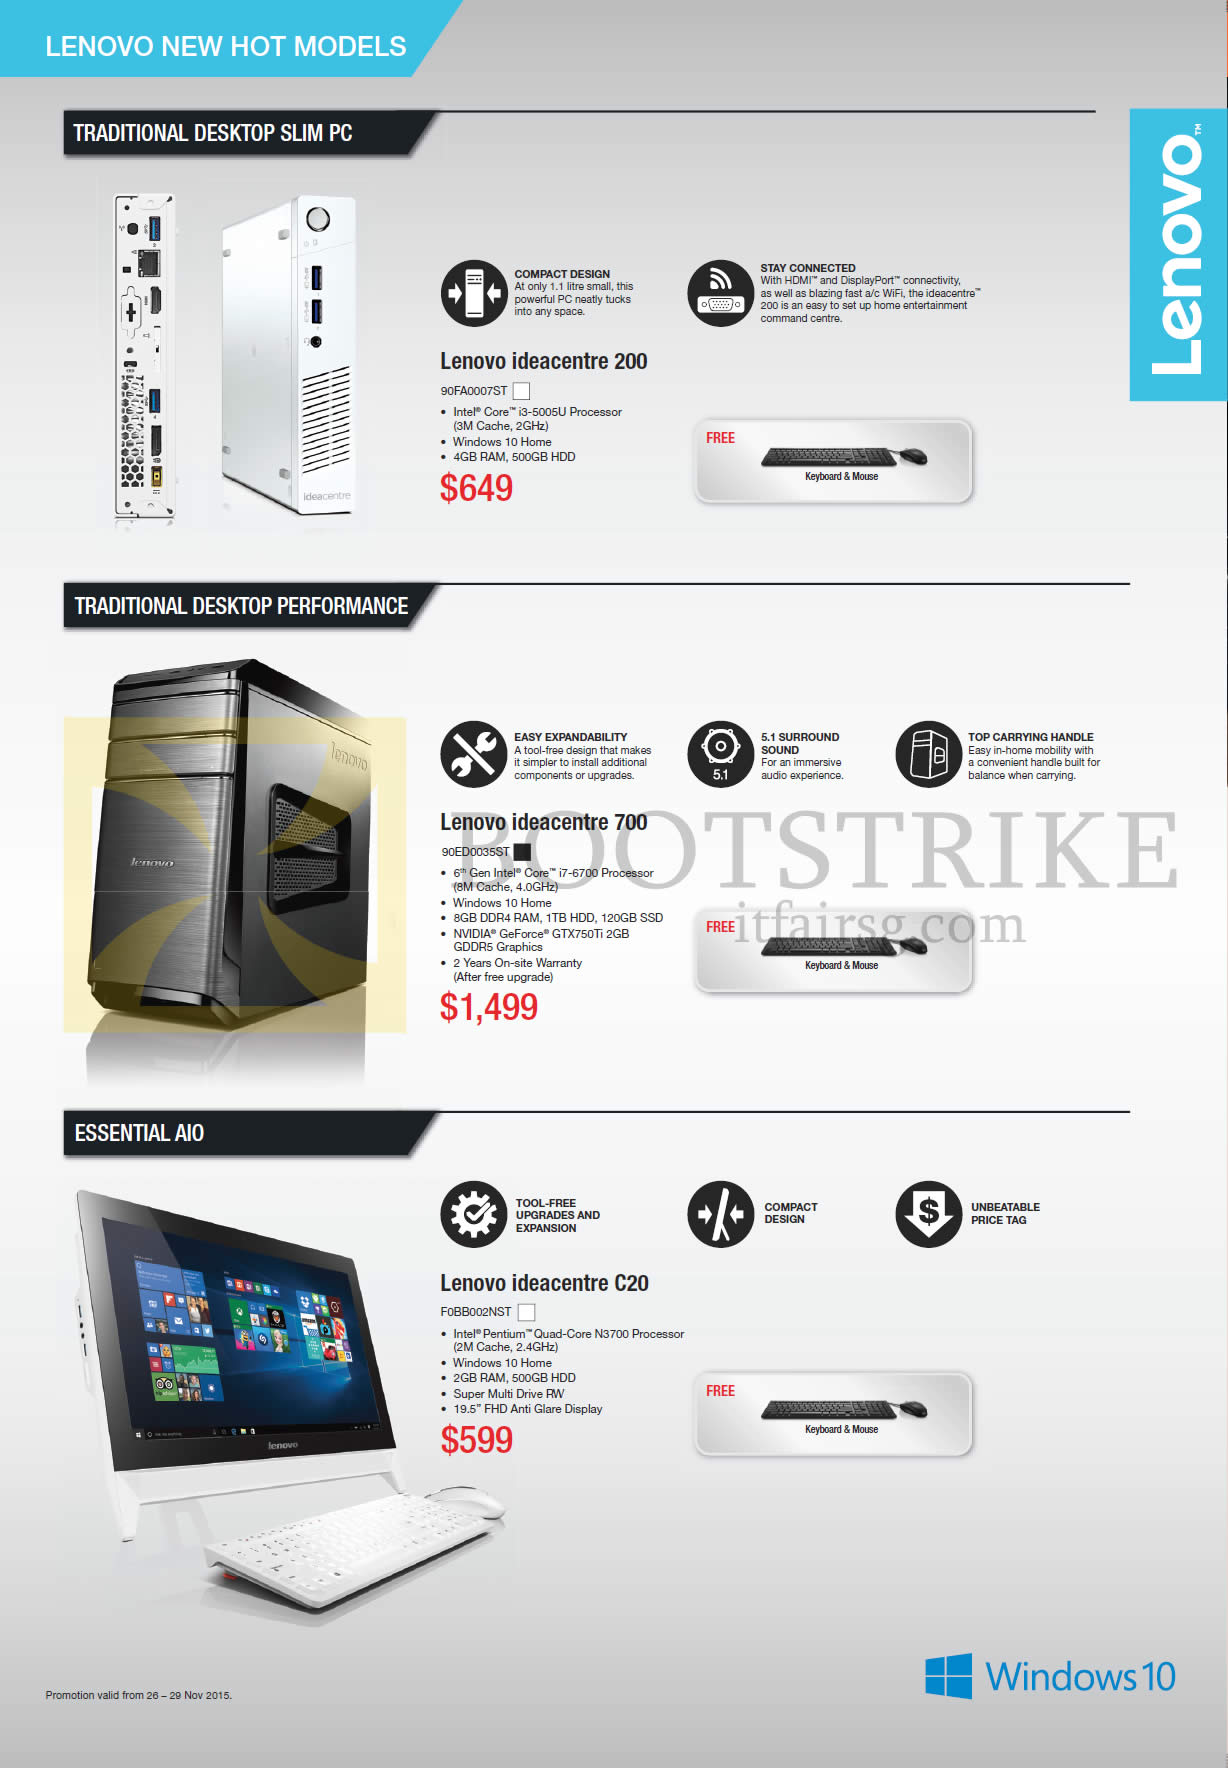 SITEX 2015 price list image brochure of Lenovo Desktop PCs Ideacentre 200 90FA0007ST, Ideacentre 700 90ED0035ST, Ideacentre C20 F0BB002NST